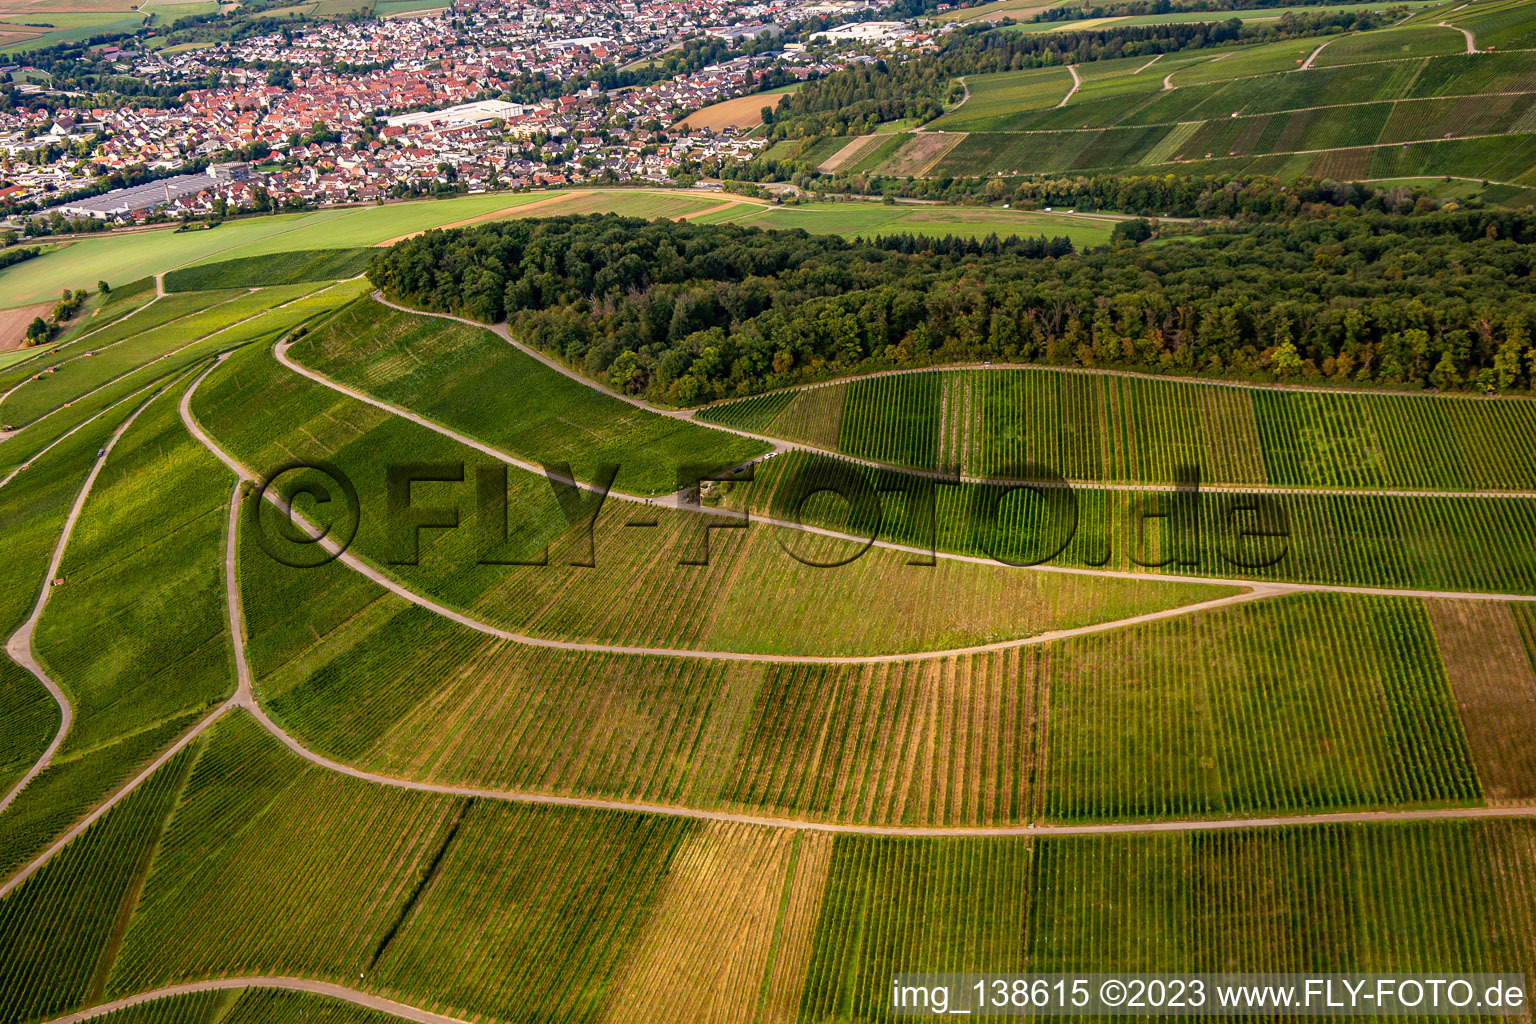 Luftbild von Weinberg Großbottwar im Ortsteil Kleinbottwar in Steinheim an der Murr im Bundesland Baden-Württemberg, Deutschland